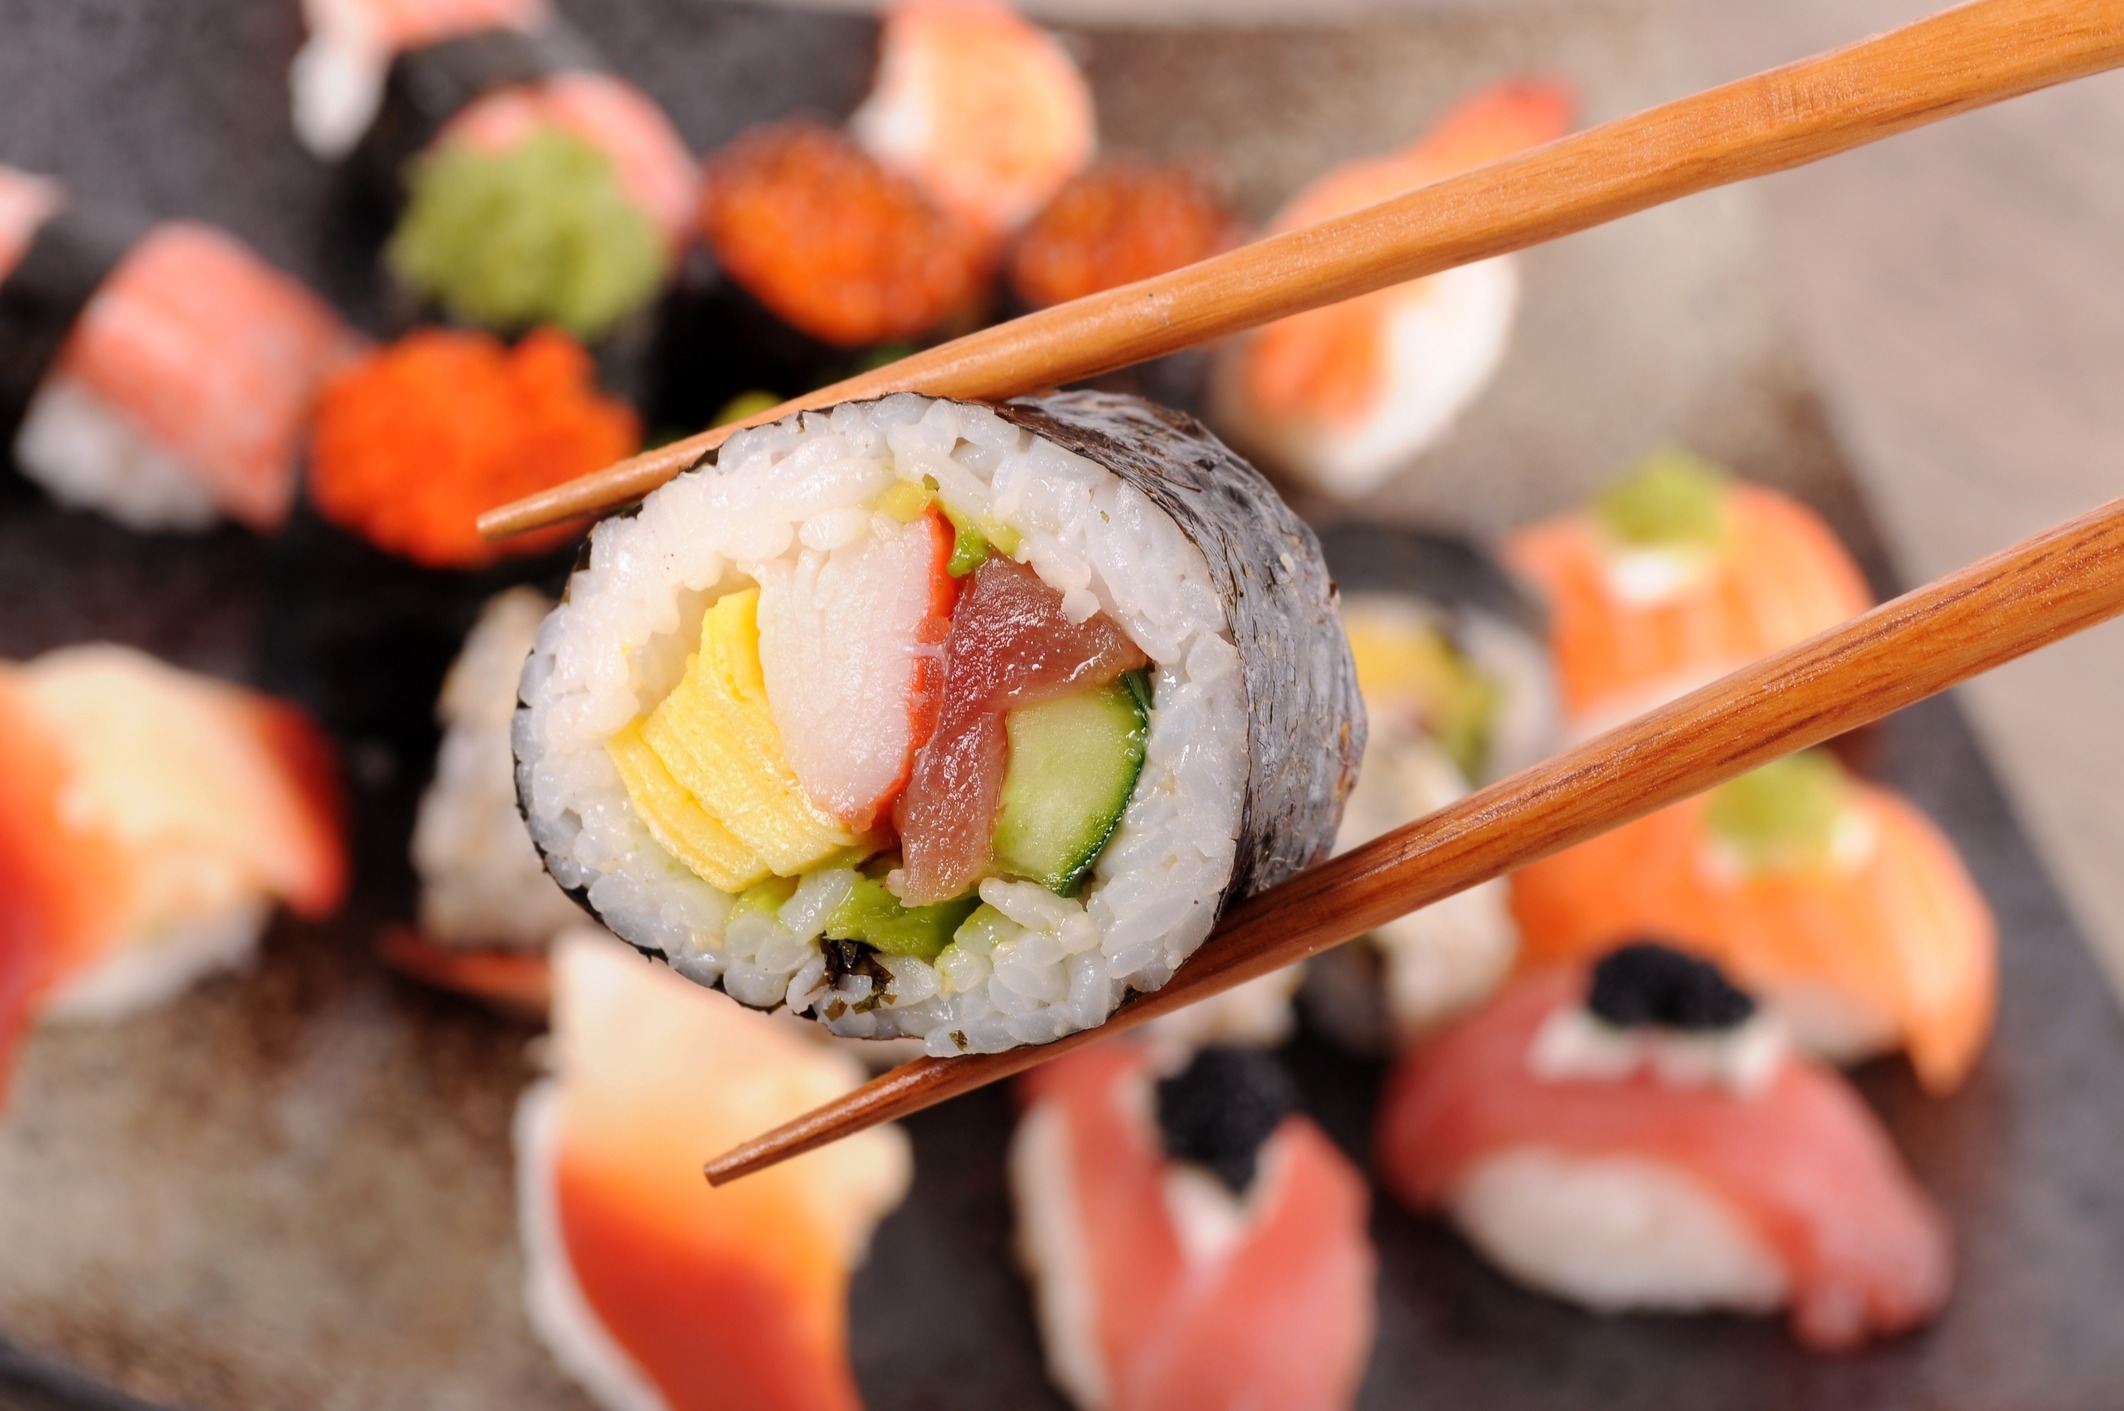 Futomaki Sushi